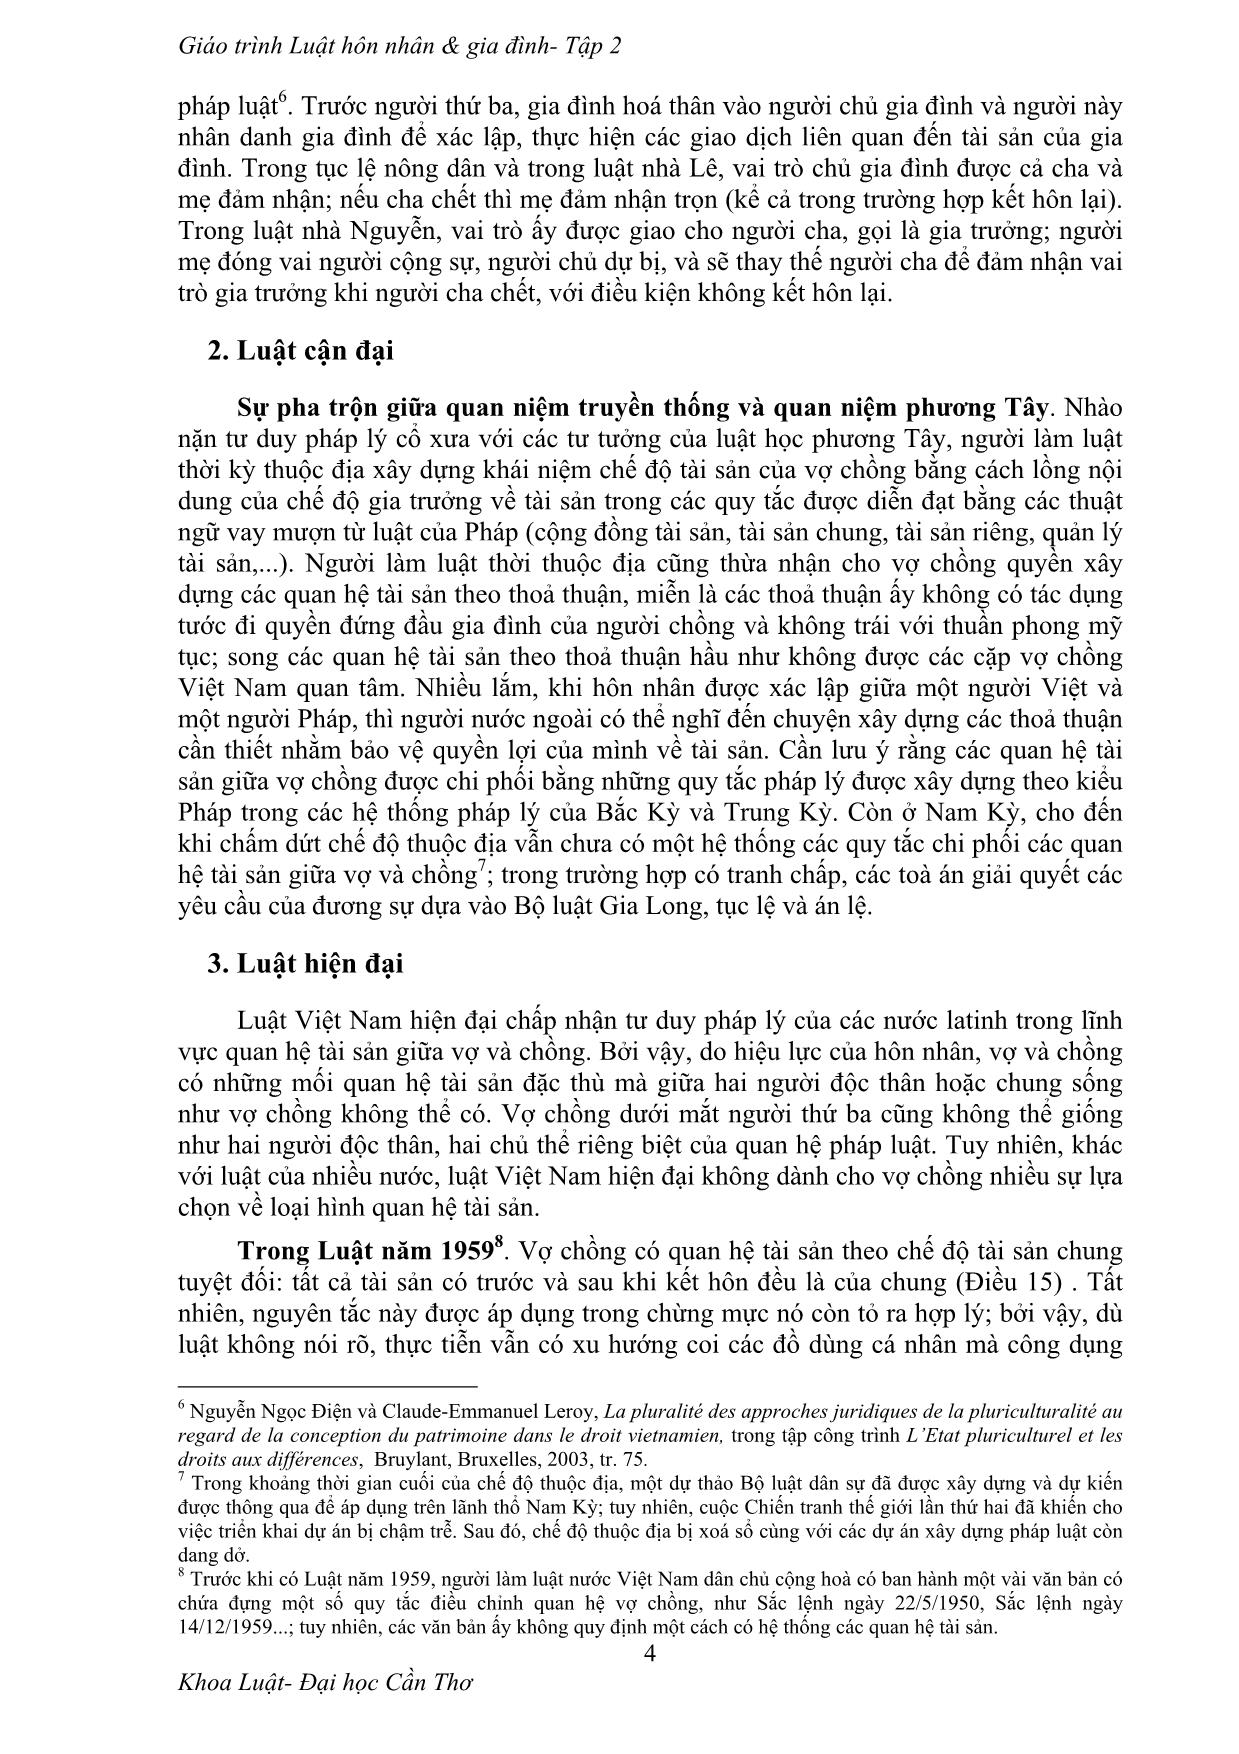 Giáo trình Giới thiệu pháp luật về quan hệ tài sản giữa vợ và chồng trang 4